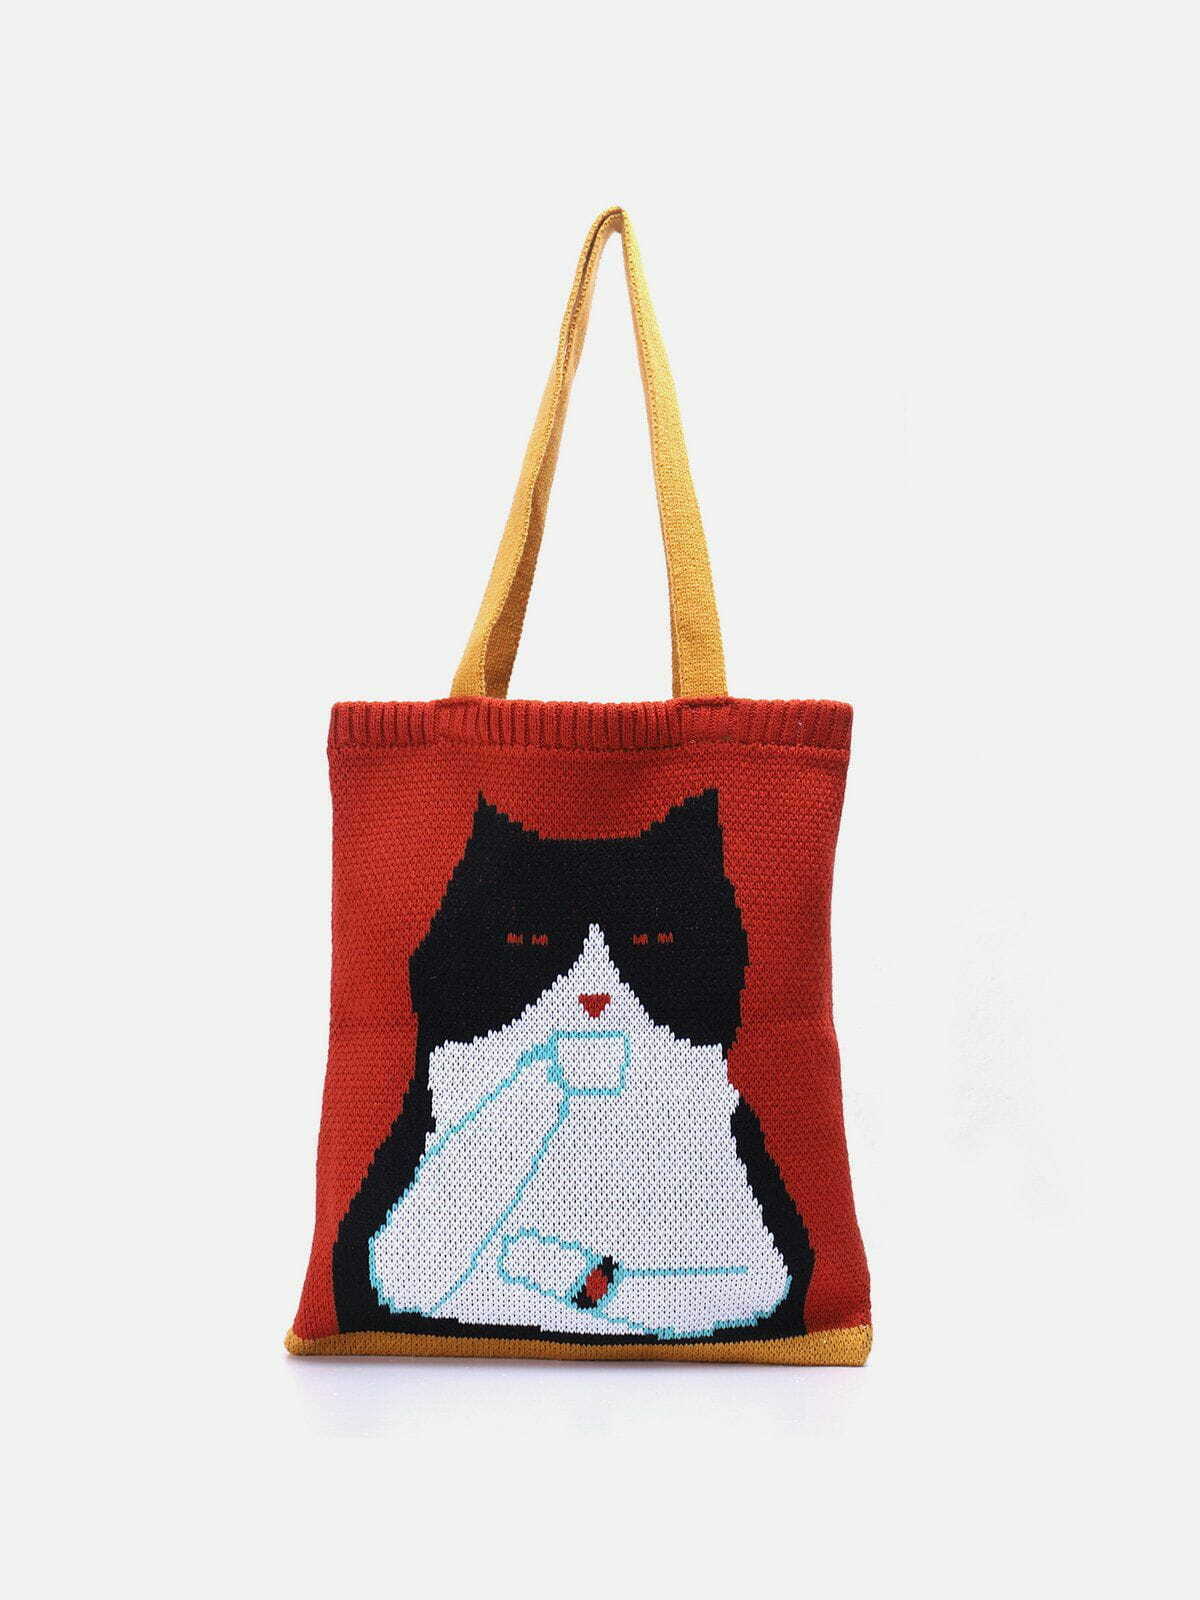 retro cat graphic knit bag urban fashion accessory 2551